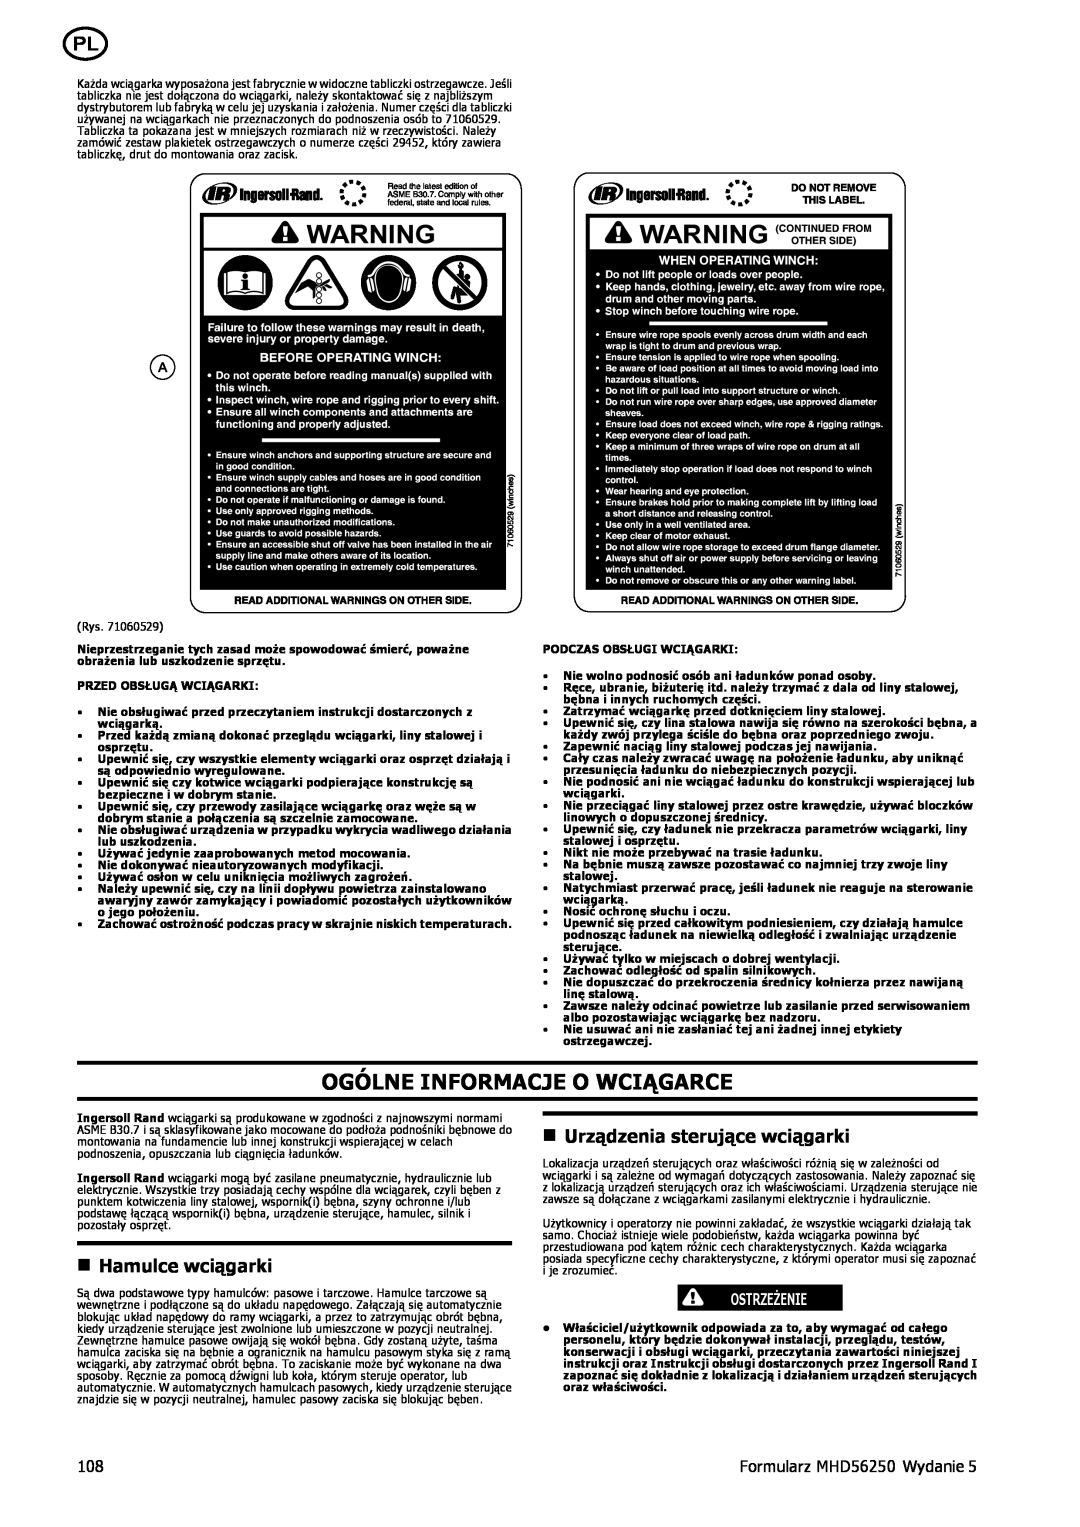 Ingersoll-Rand MHD56250 Ogólne Informacje O Wciągarce, n Hamulce wciągarki, n Urządzenia sterujące wciągarki, Ostrzeżenie 